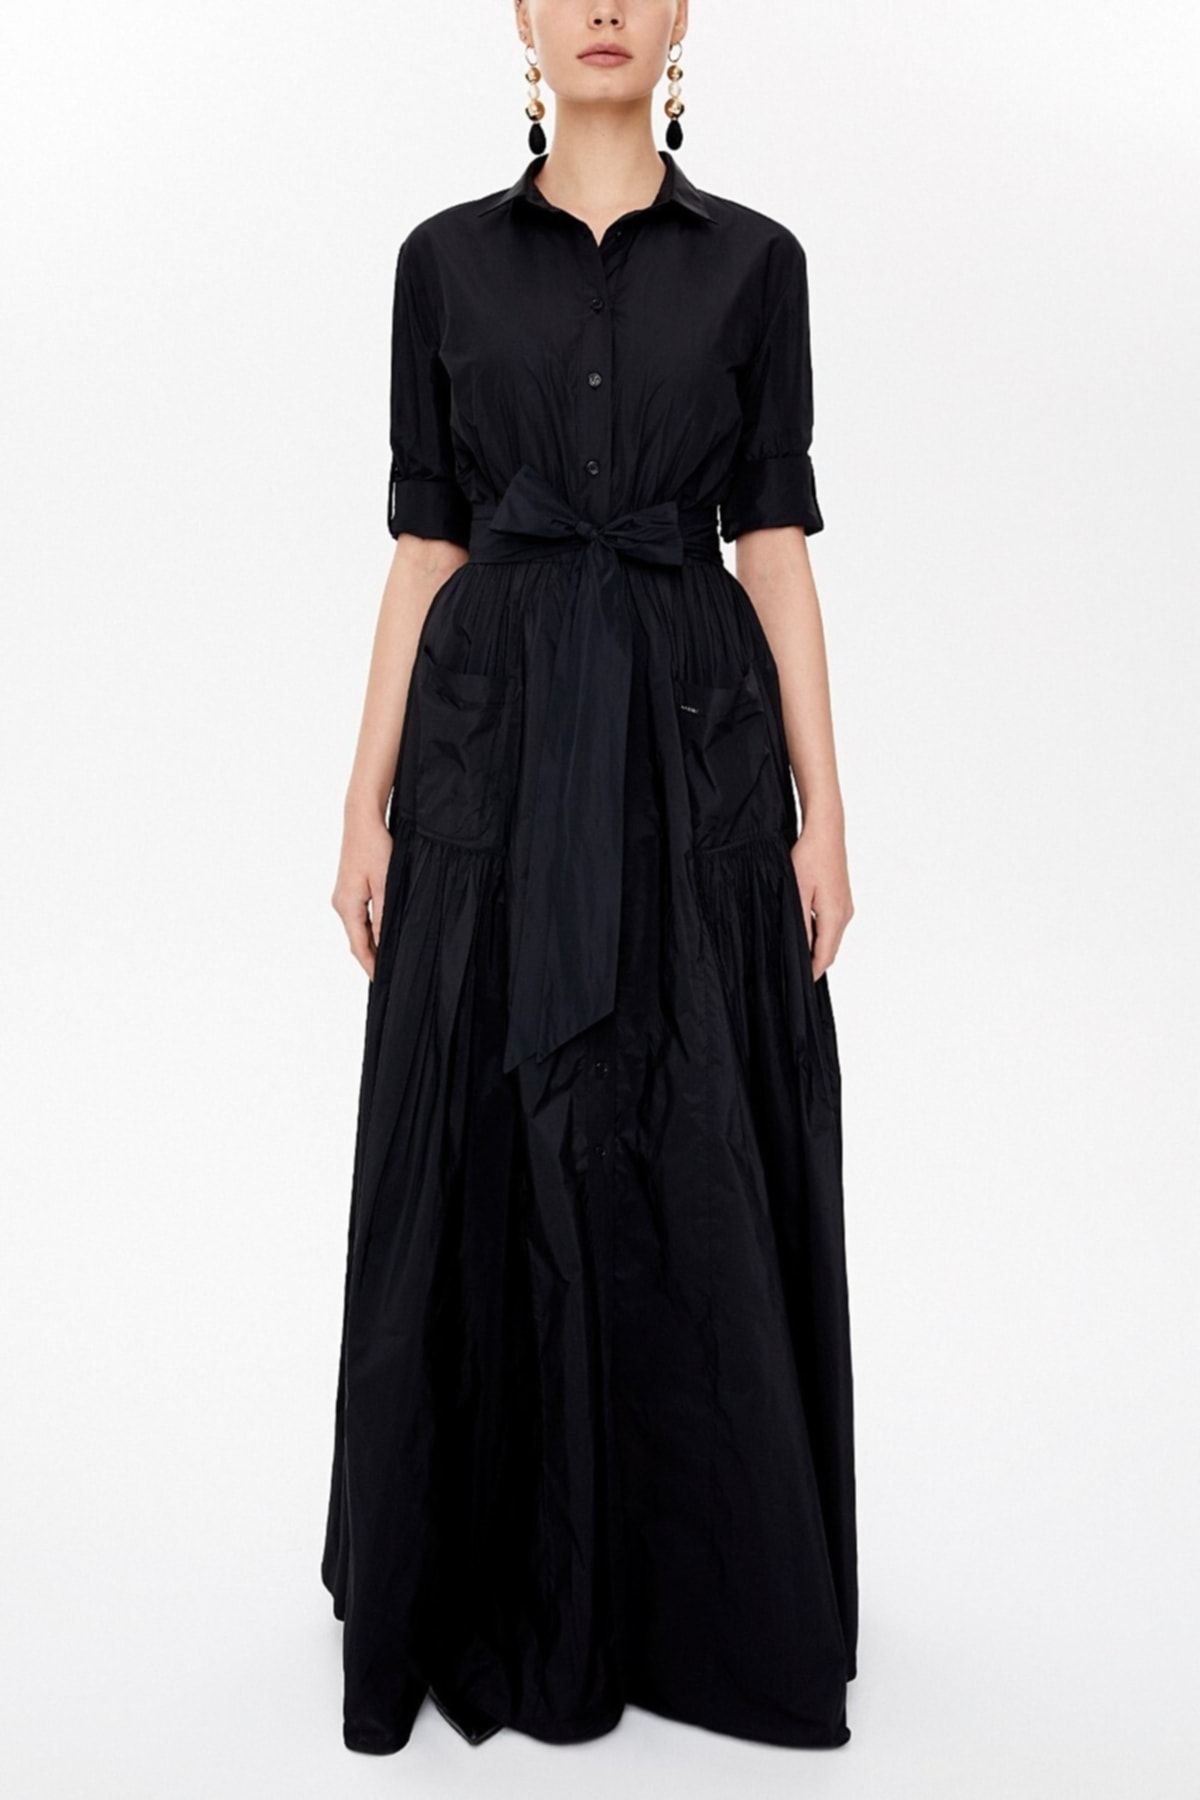 SOCIETA Kadın Siyah Büzgü Detaylı Uzun Gömlek Elbise 93131